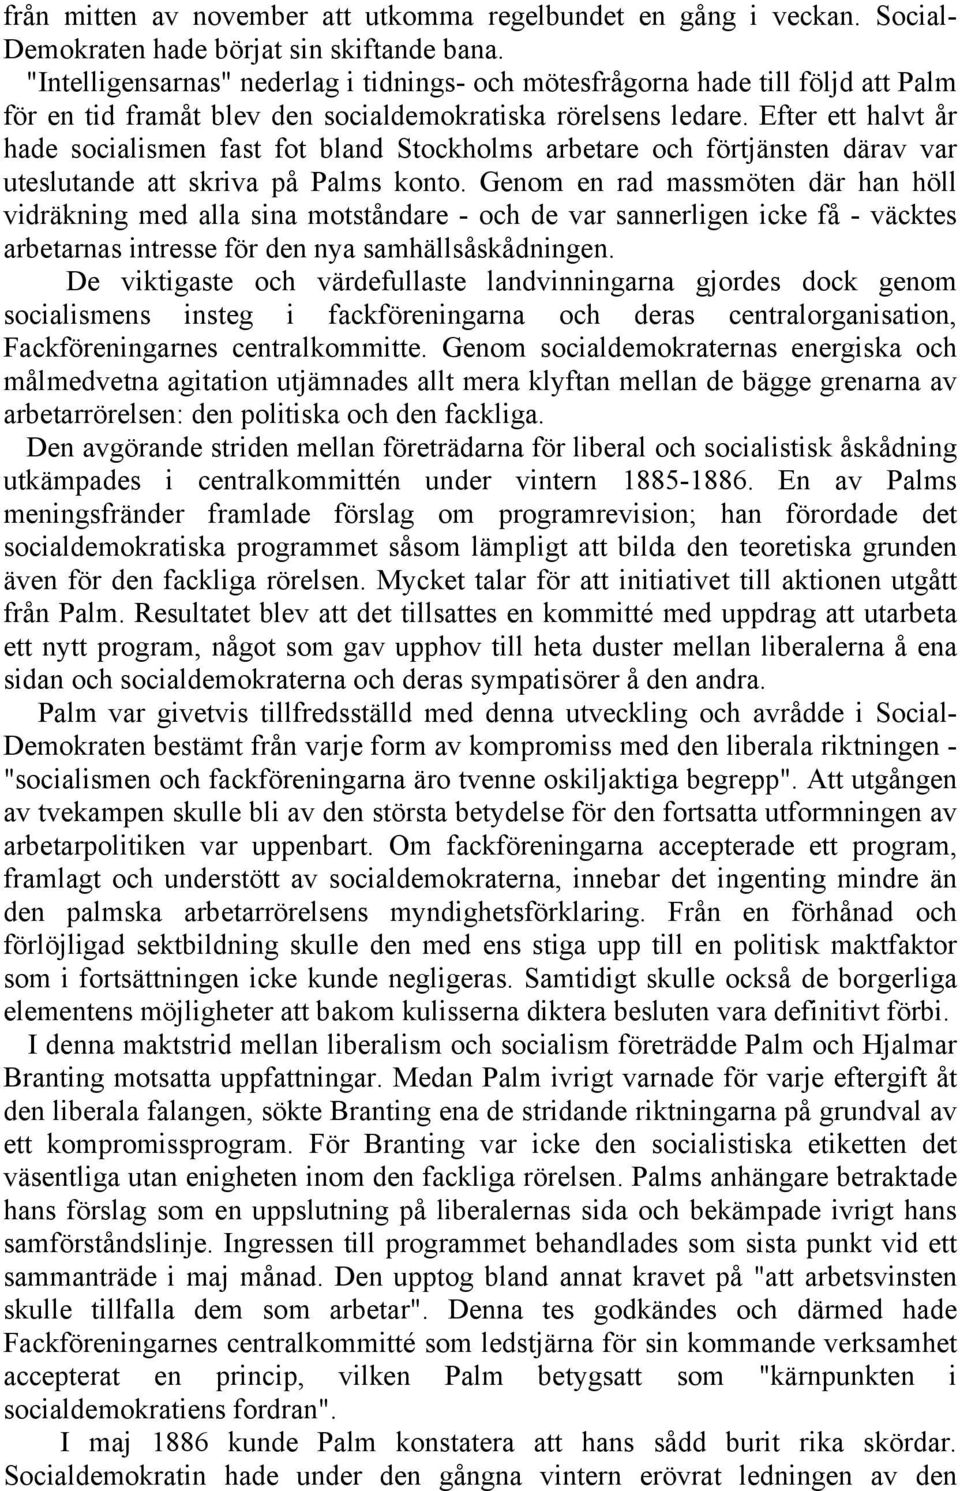 Efter ett halvt år hade socialismen fast fot bland Stockholms arbetare och förtjänsten därav var uteslutande att skriva på Palms konto.